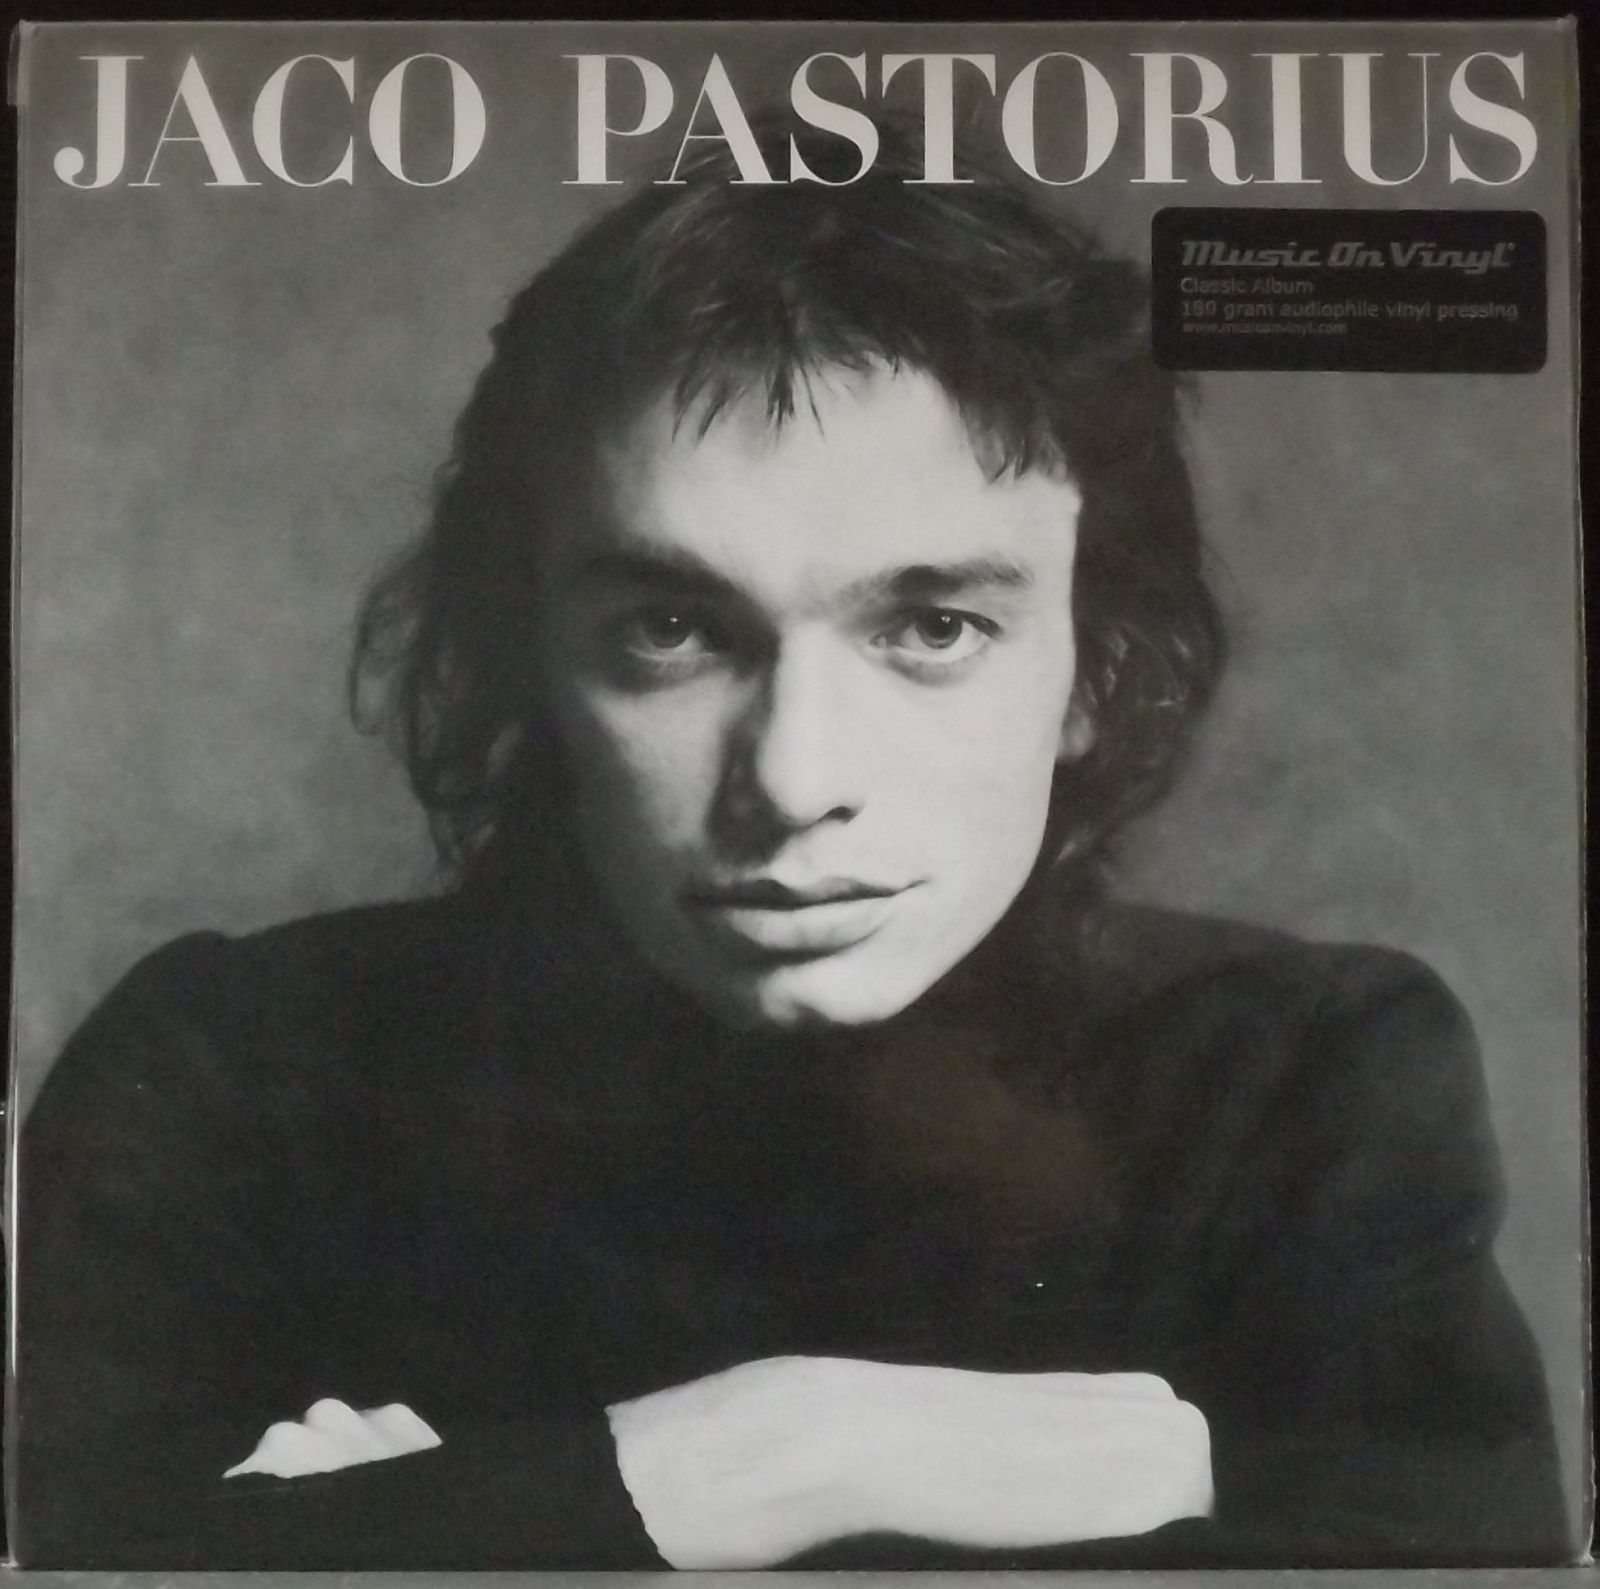 Виниловая пластинка Pastorius, Jaco, Jaco Pastorius (8713748980467)